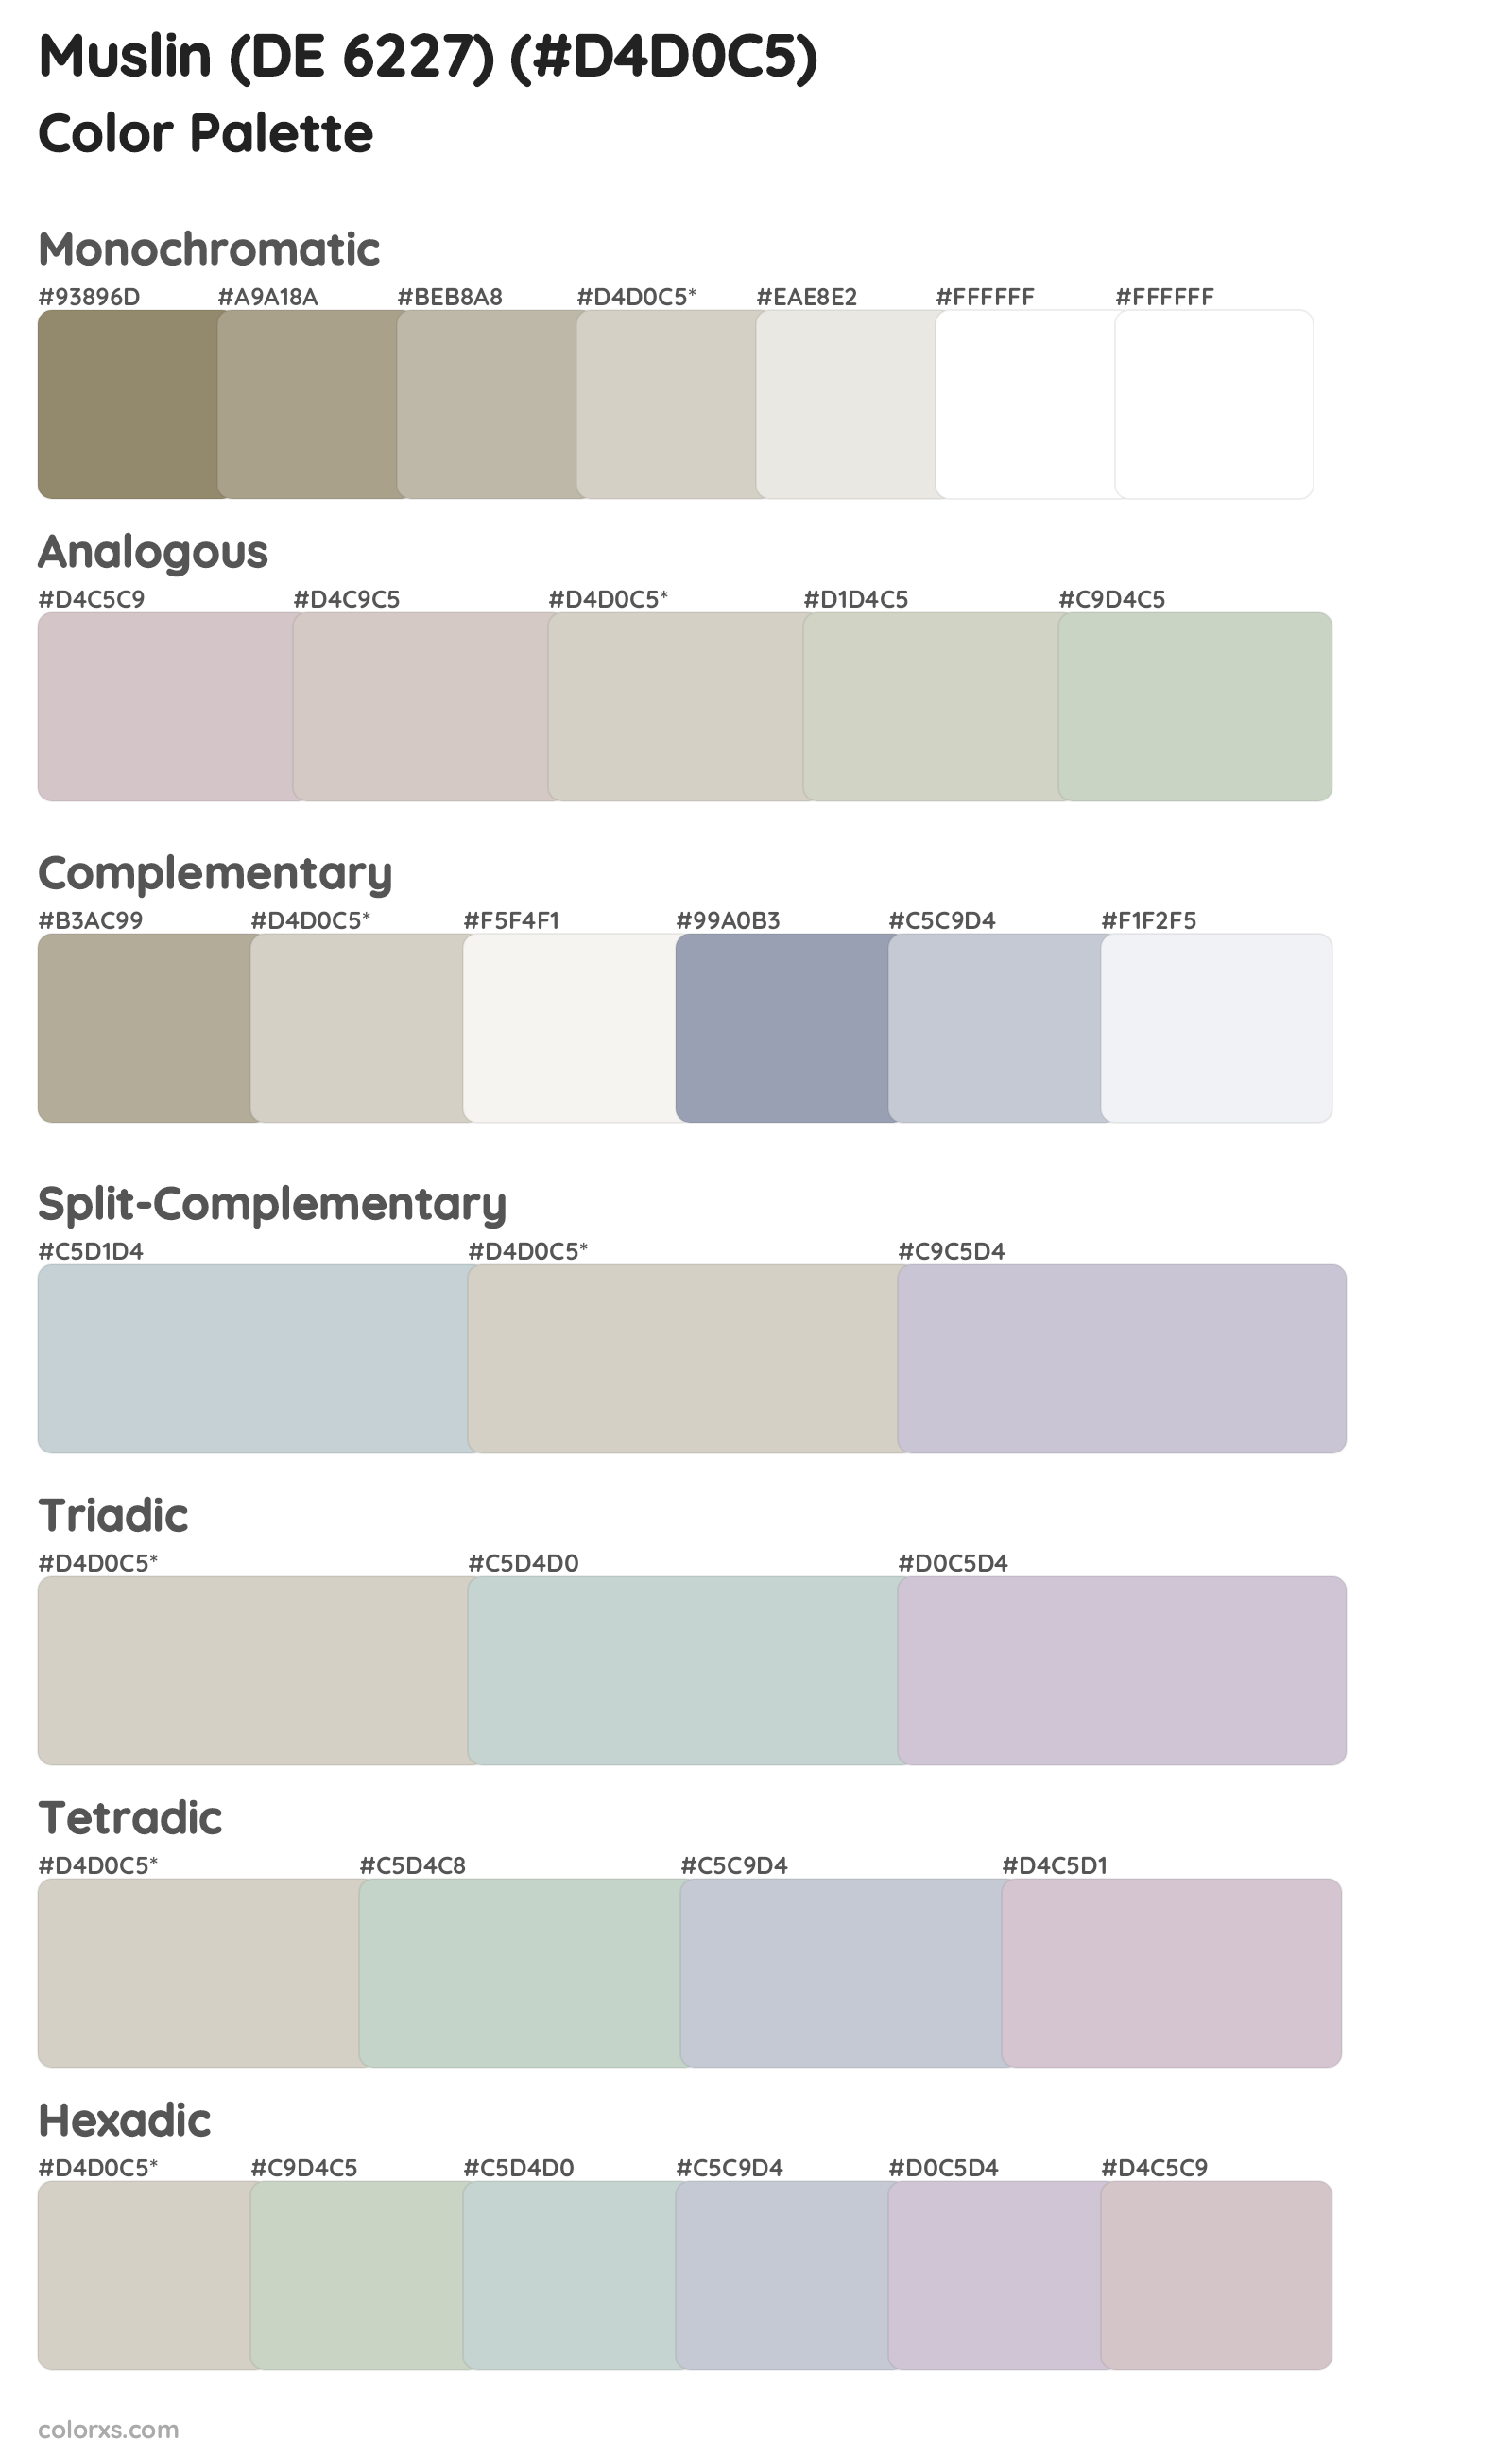 Muslin (DE 6227) Color Scheme Palettes